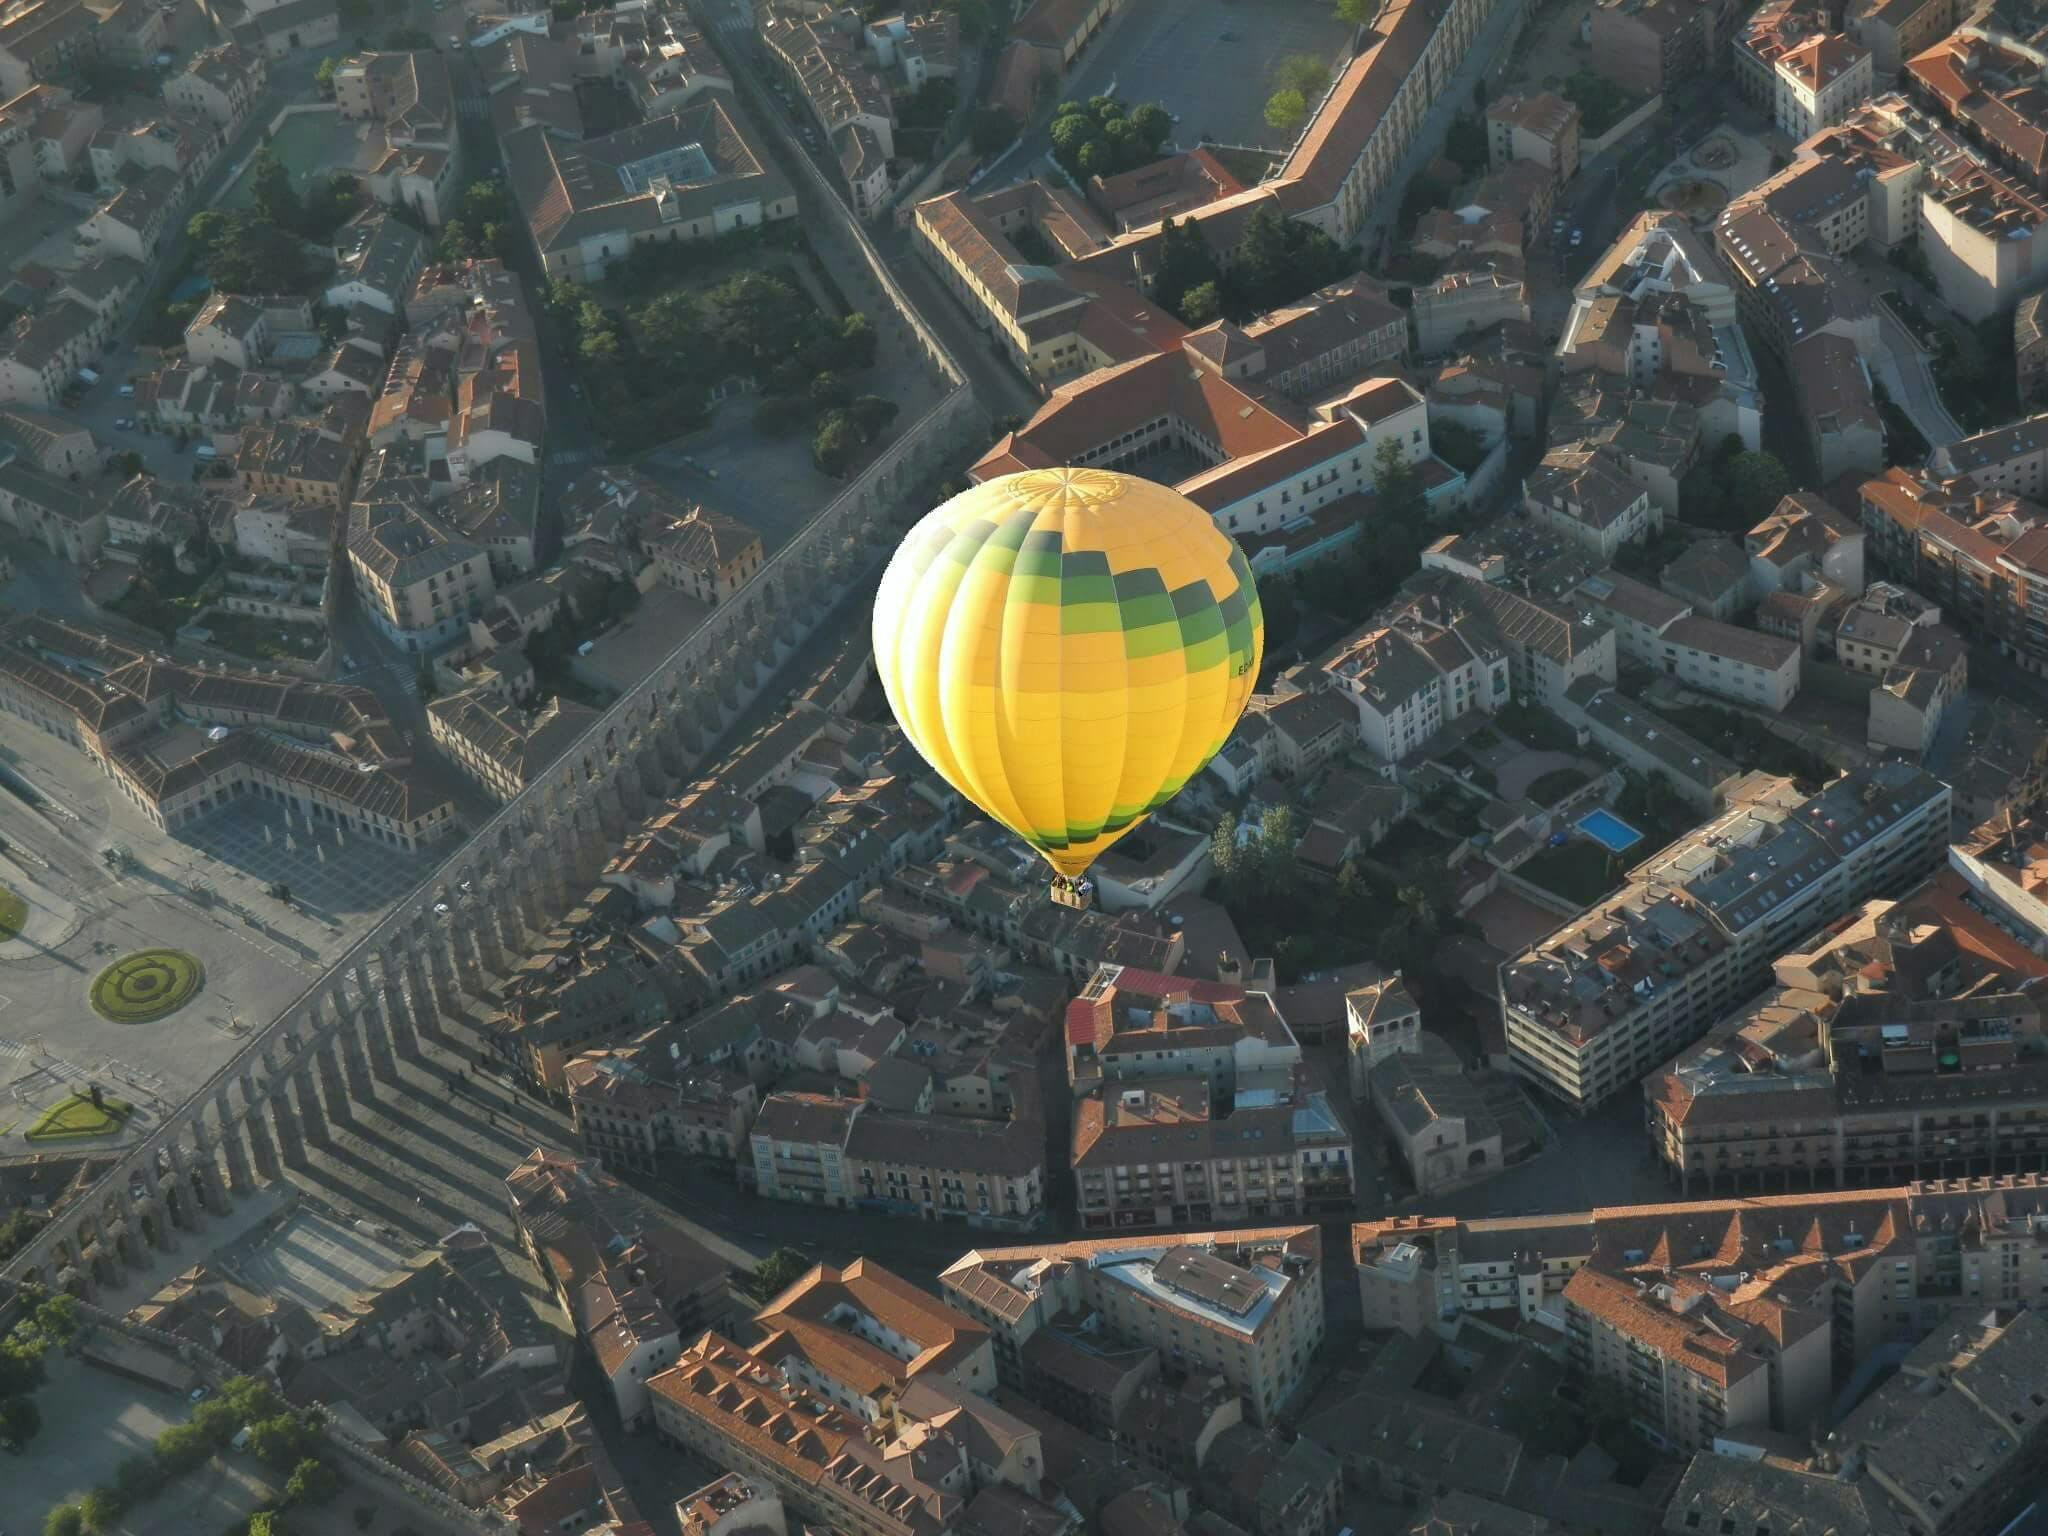 Lot balonem na ogrzane powietrze w Segowii